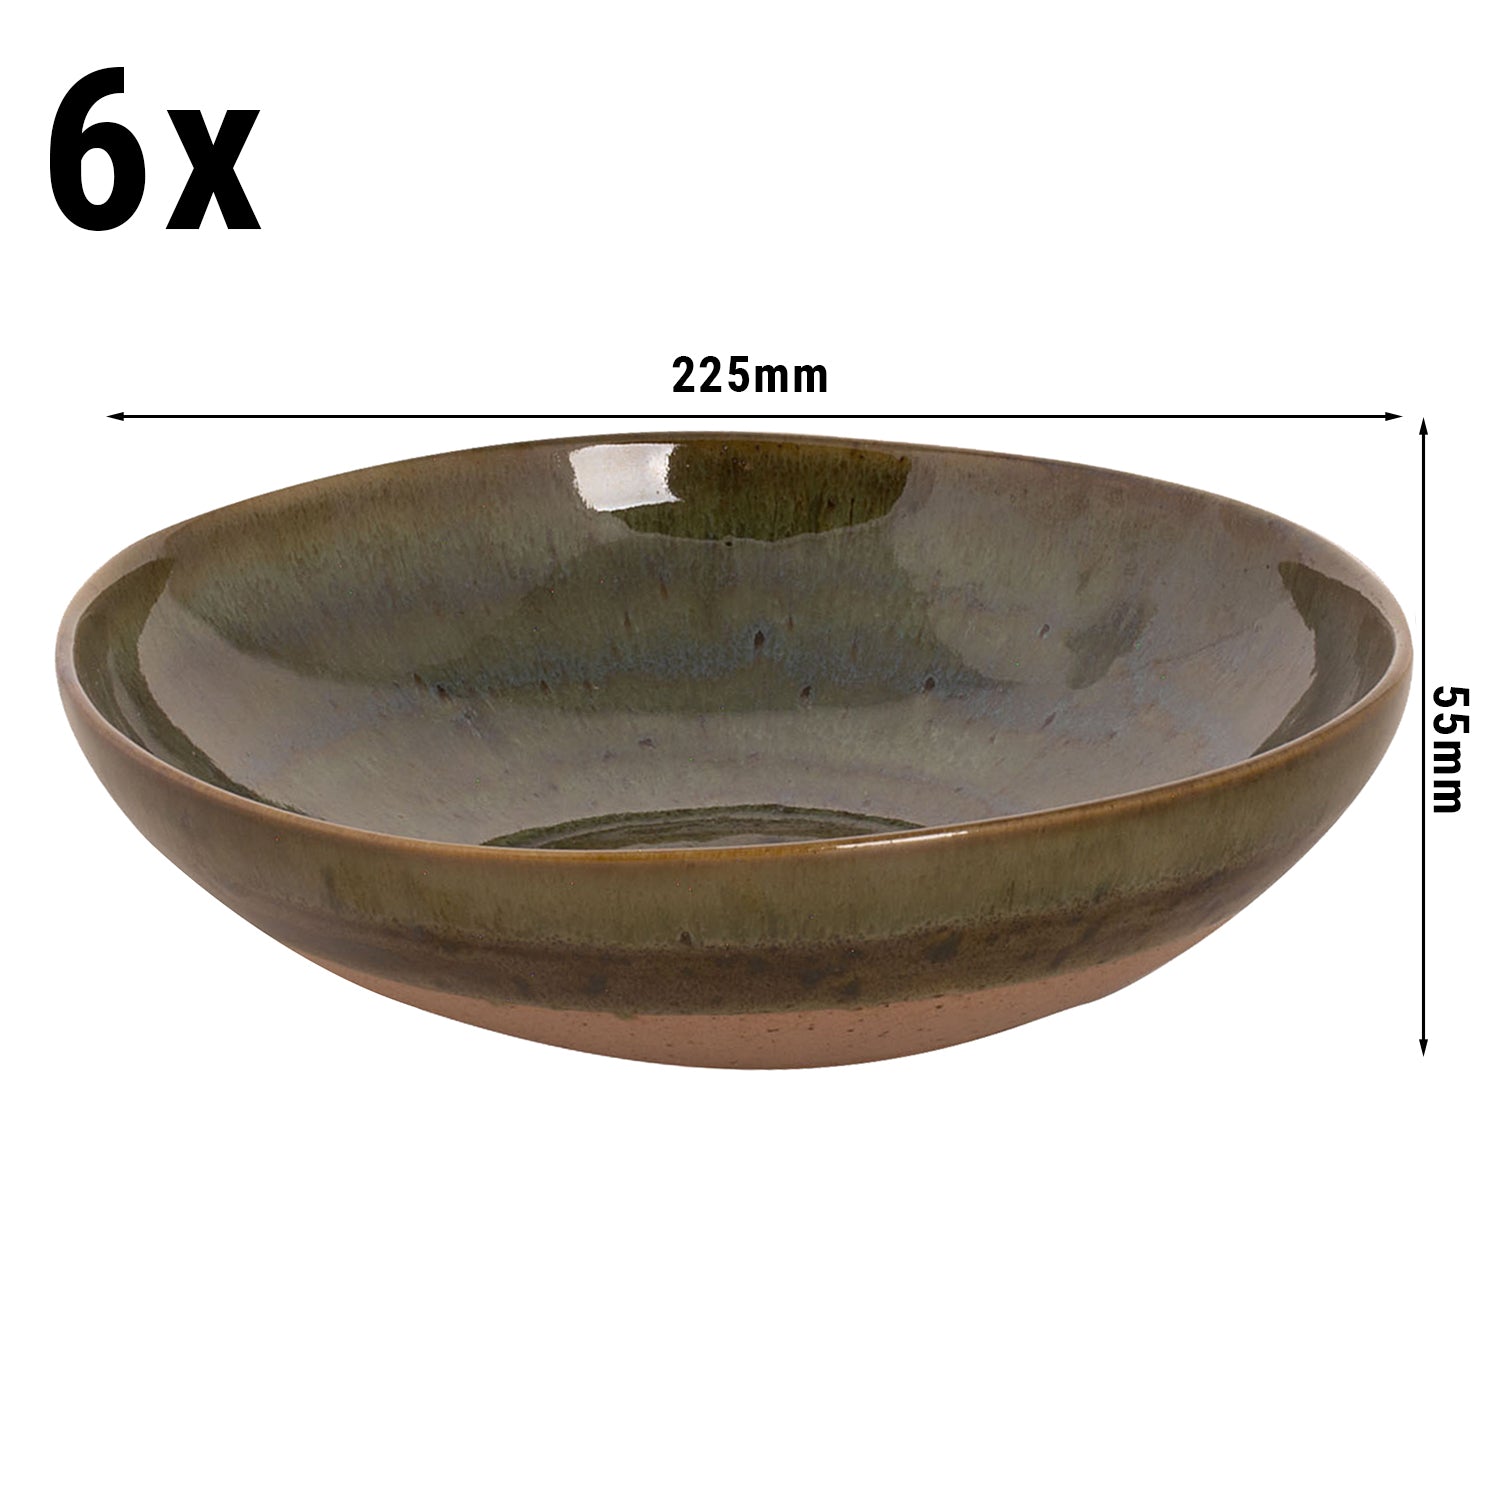 (6 stk) WISTERIA - Dyp tallerken - Ø 22 cm - Grønn/Beige